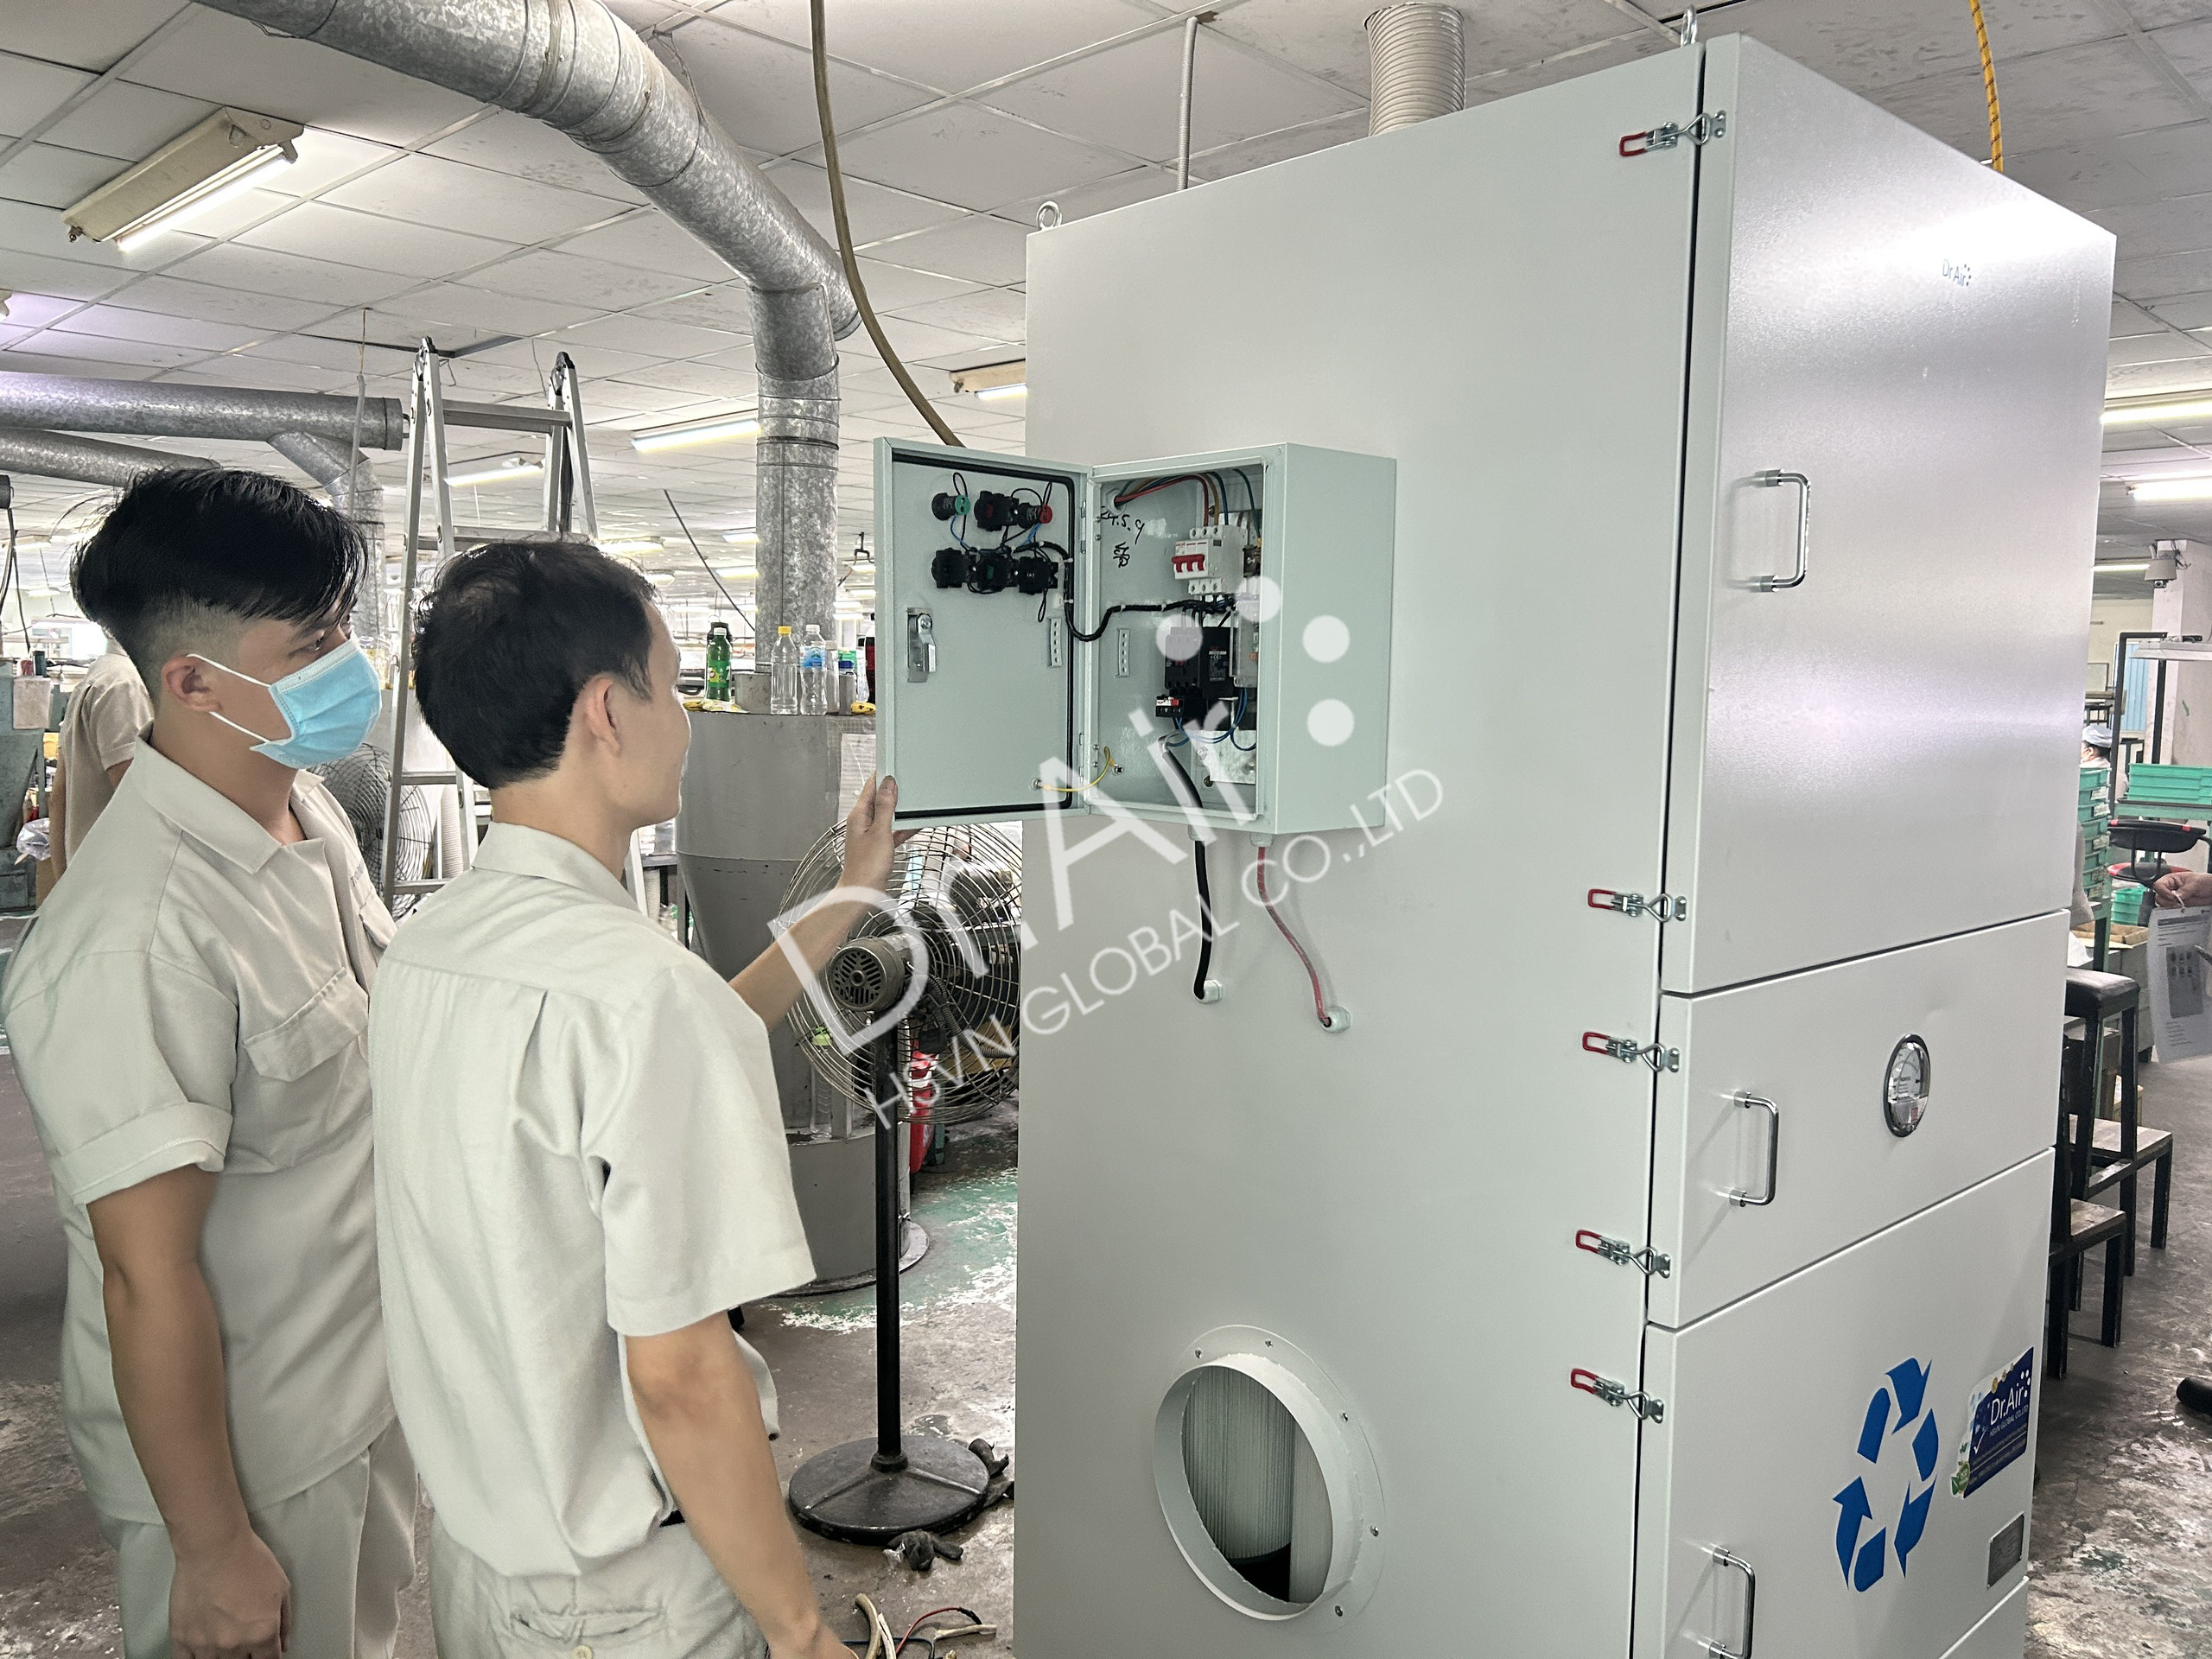 Máy lọc bụi công nghiệp Dr.Air KHC xử lý bụi cho nhà máy khu chế xuất Tân Thuận, Quận 7, Tp. Hồ Chí Minh